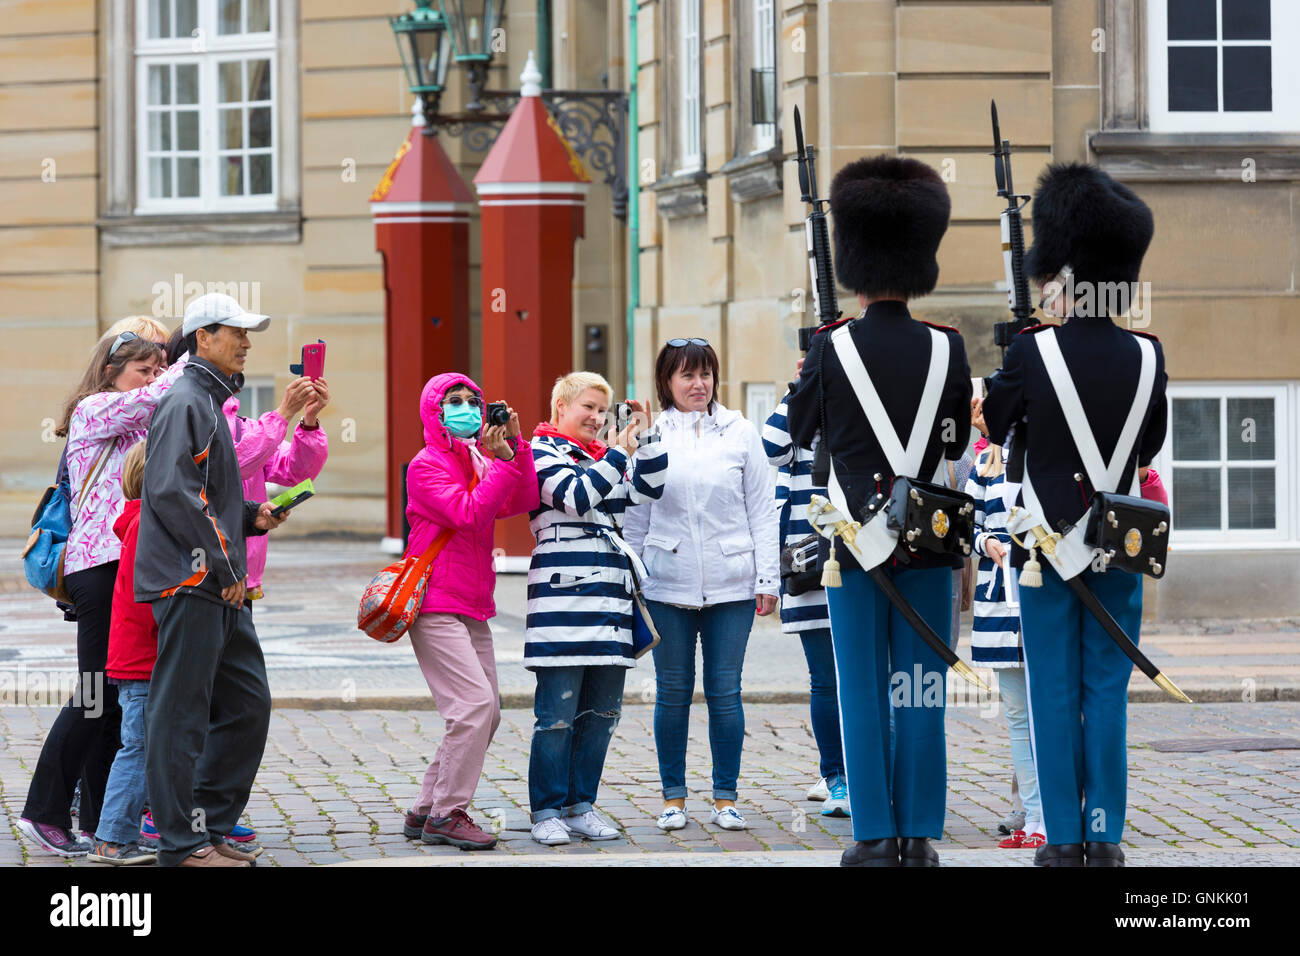 Los turistas tomando fotografías del ejército danés sentry soldado uniformado en el Real Palacio de Amalienborg, en Copenhague, Dinamarca Foto de stock